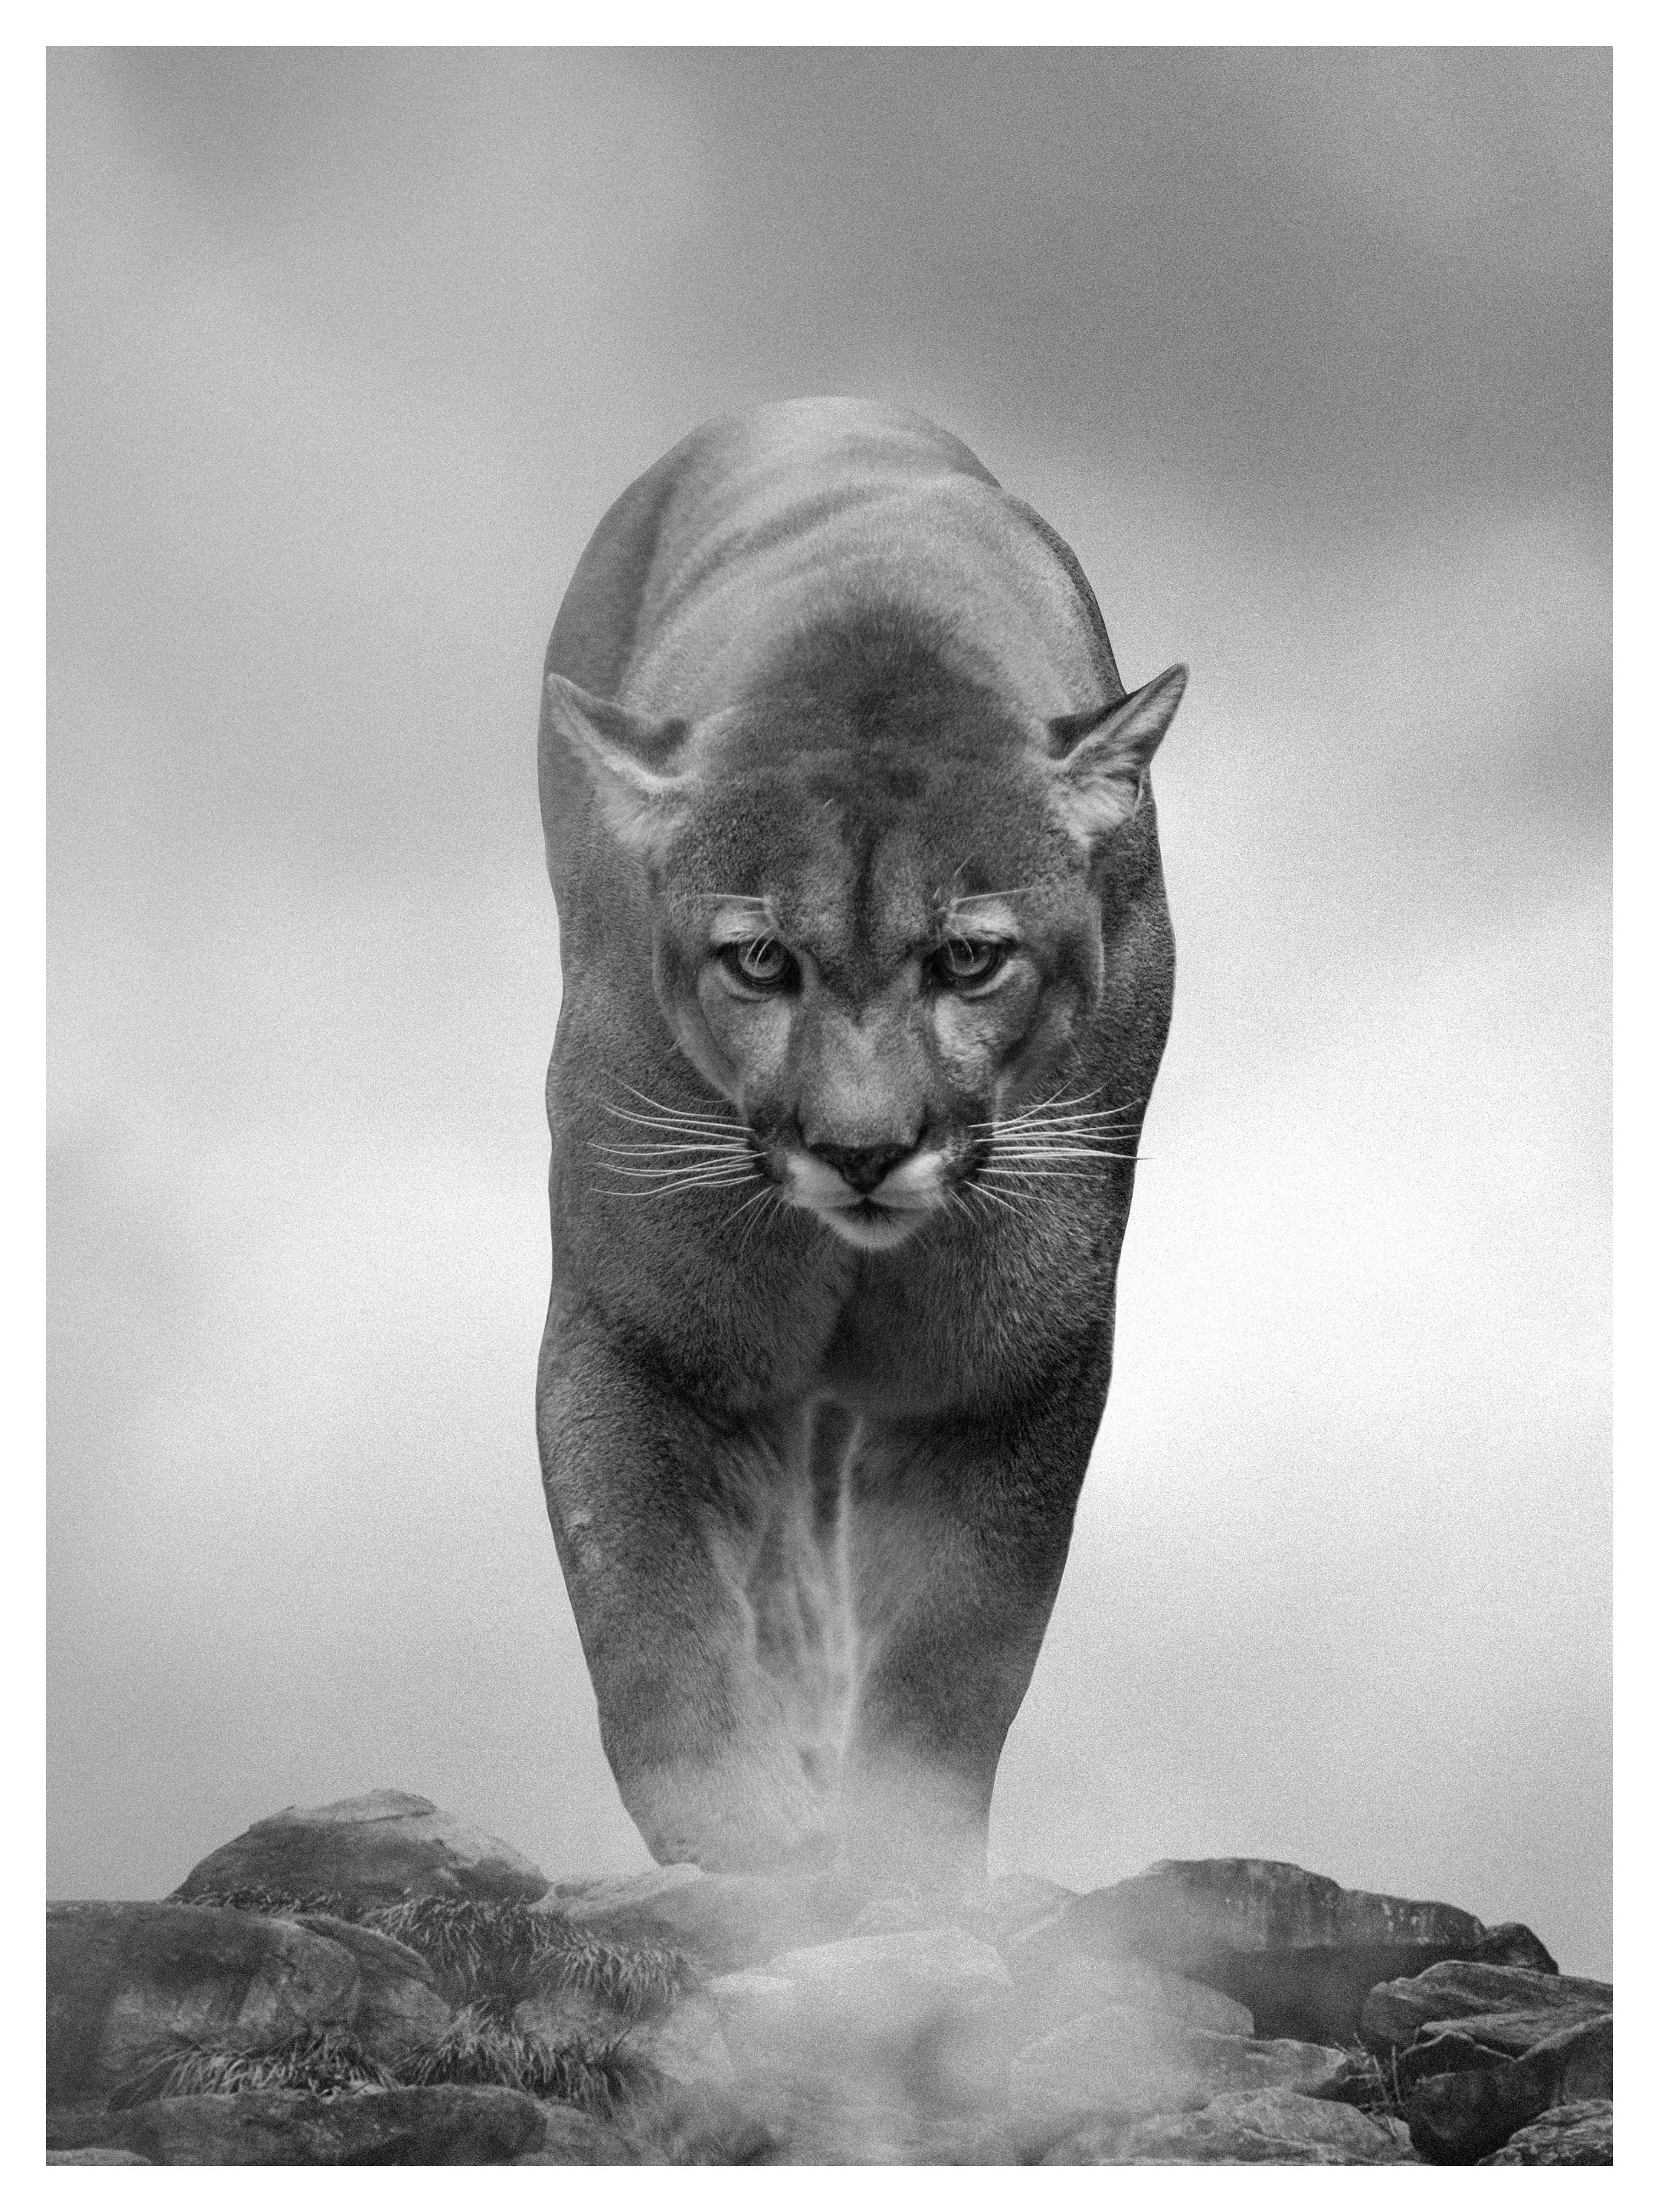 Animal Print Shane Russeck - « King of the Mountain », photographie en noir et blanc 40x28, Cougar, lion de montagne